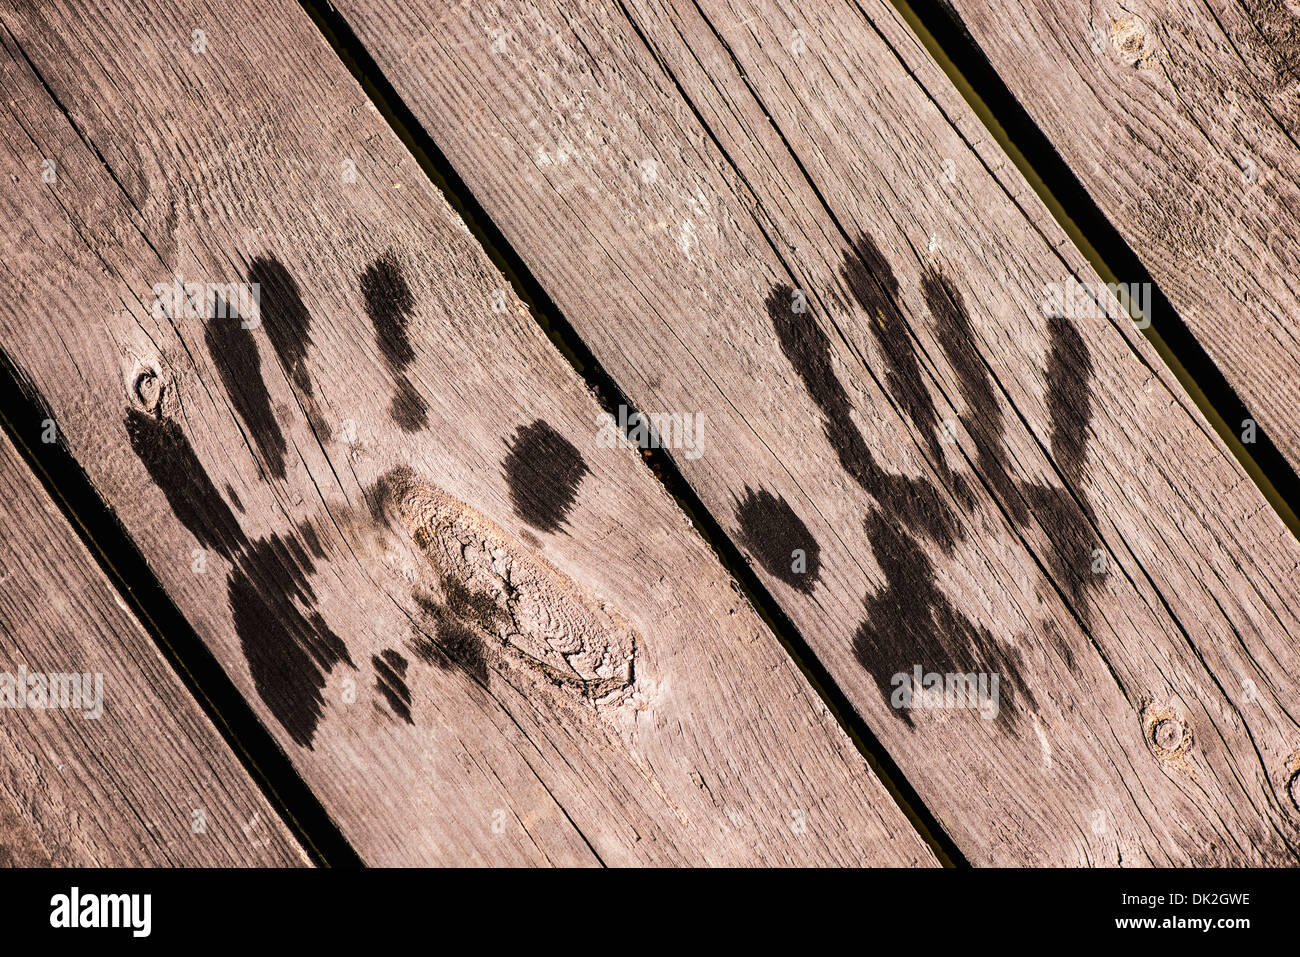 Moment de vie d'été de l'enfance. Des empreintes humides sur la surface en bois. Banque D'Images